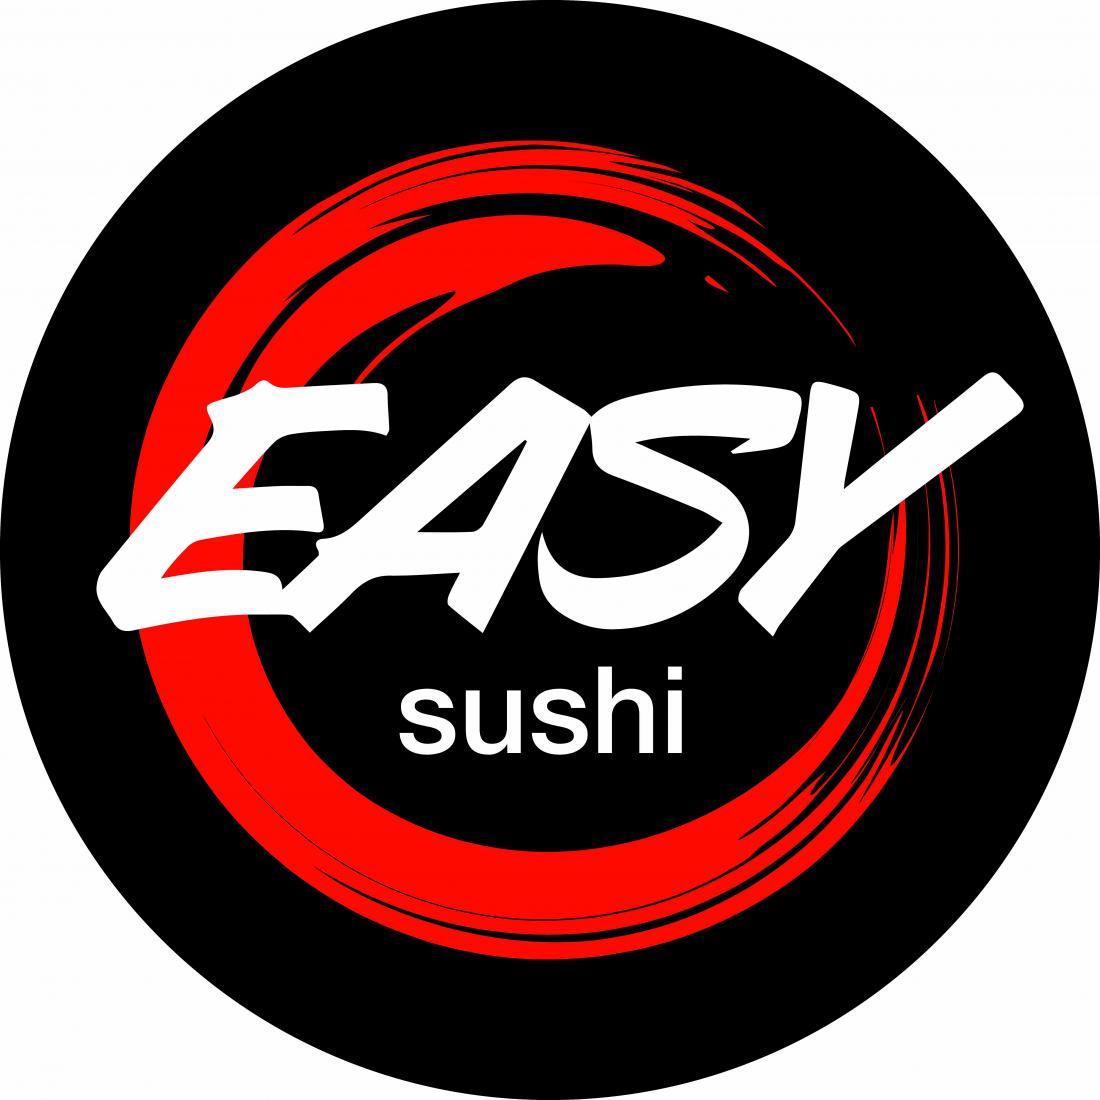 Гавайское поке от 6,50 руб/до 295 г, суши-сеты от 12 руб/до 1071 г от "Easy sushi" 